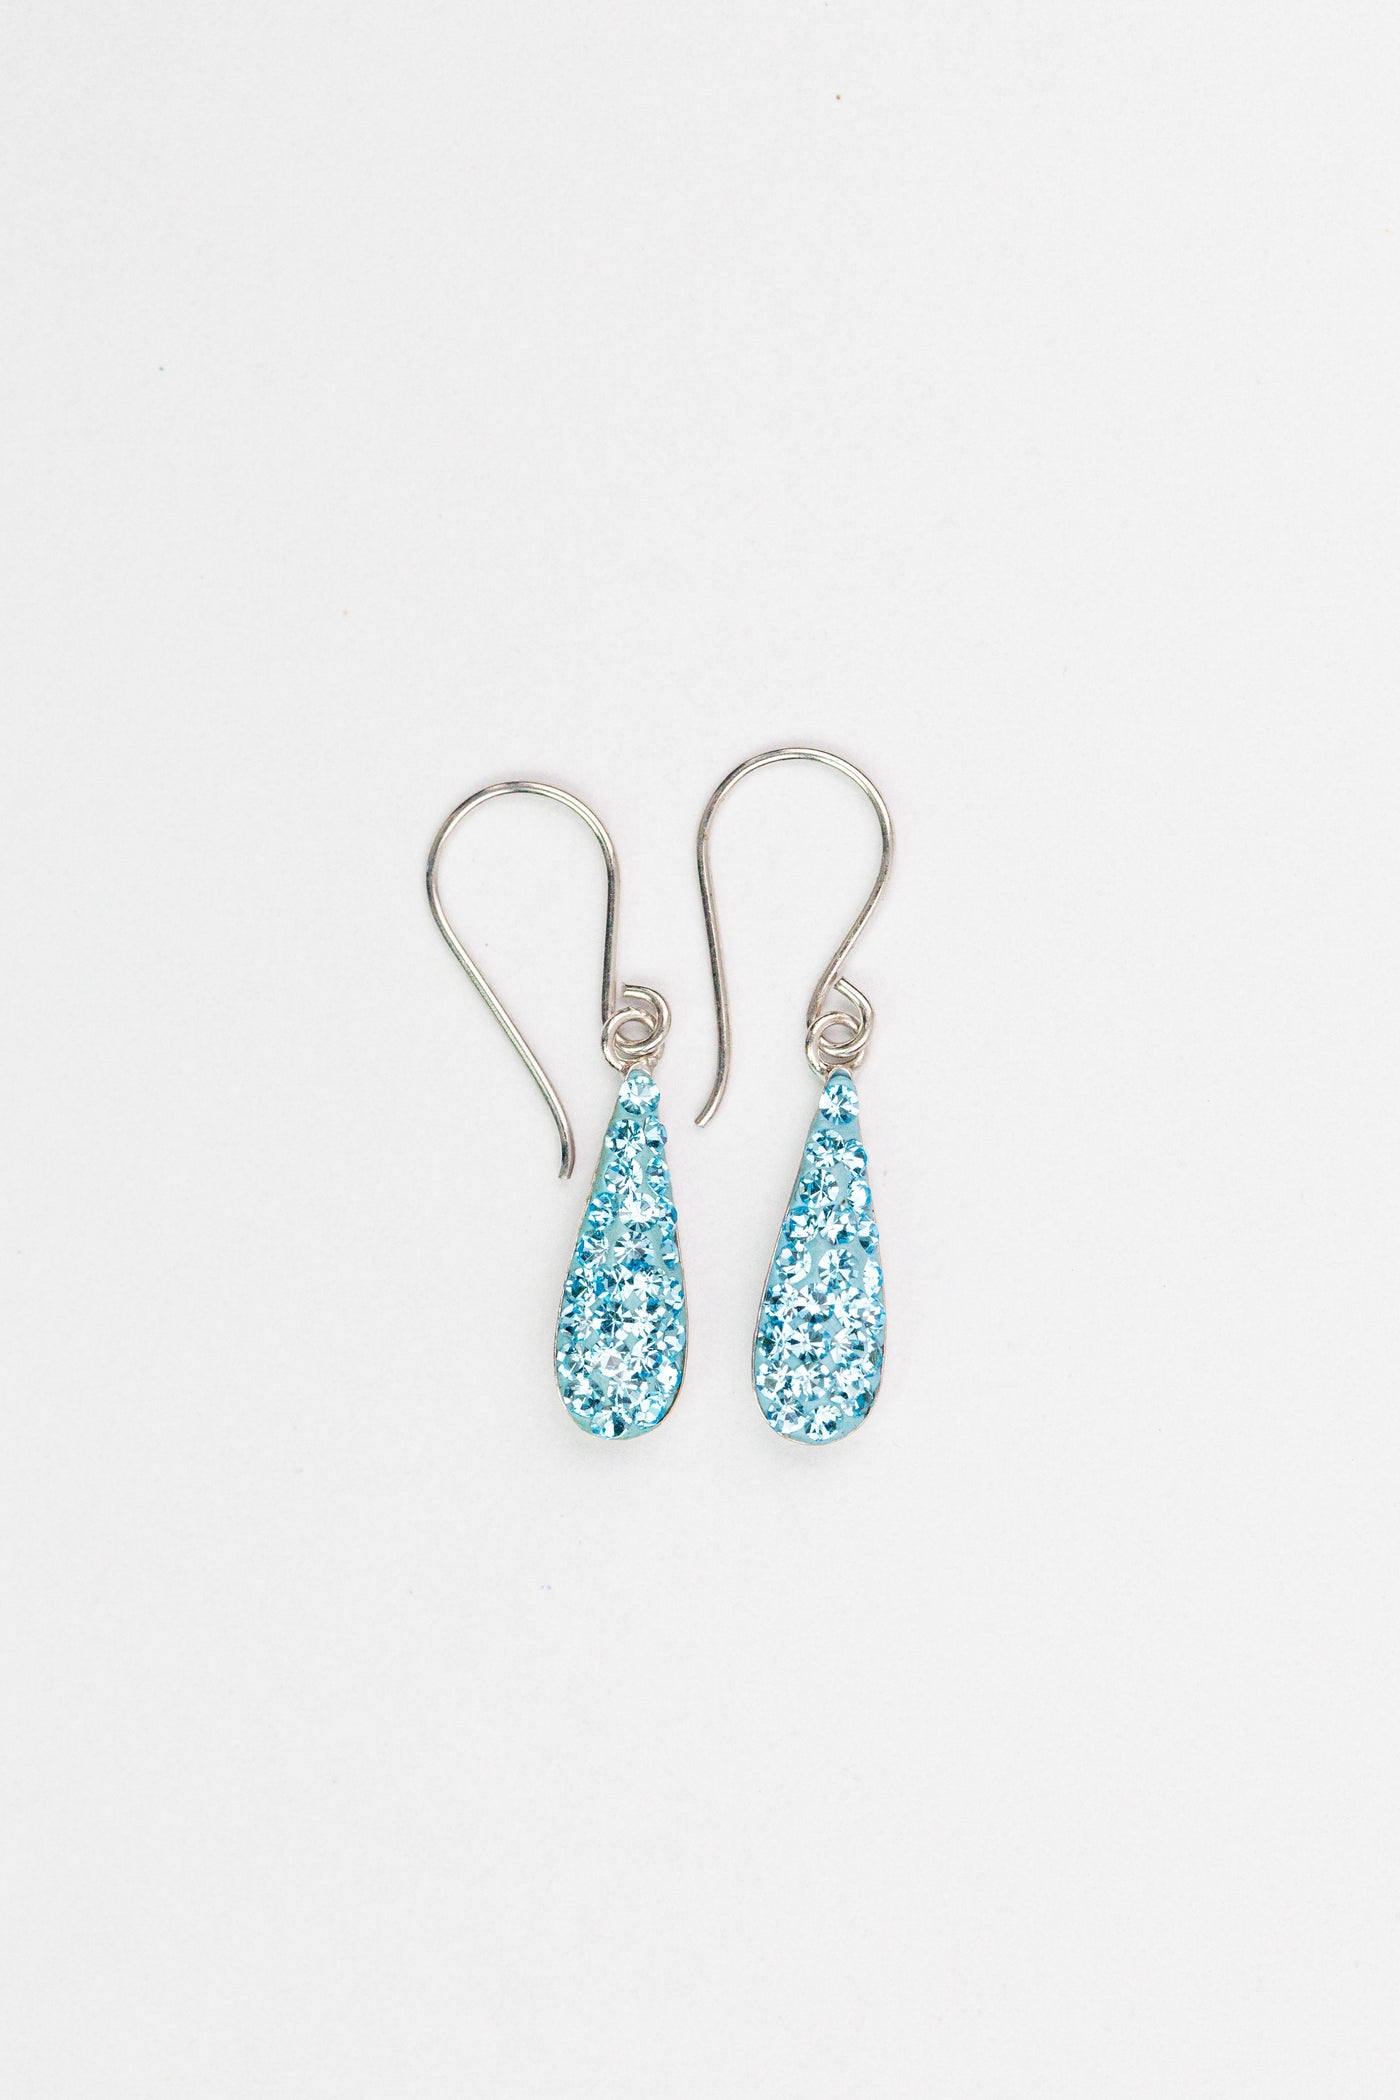 Teardrop Crystal Silver Earrings in Aquamarine | Annie and Sisters